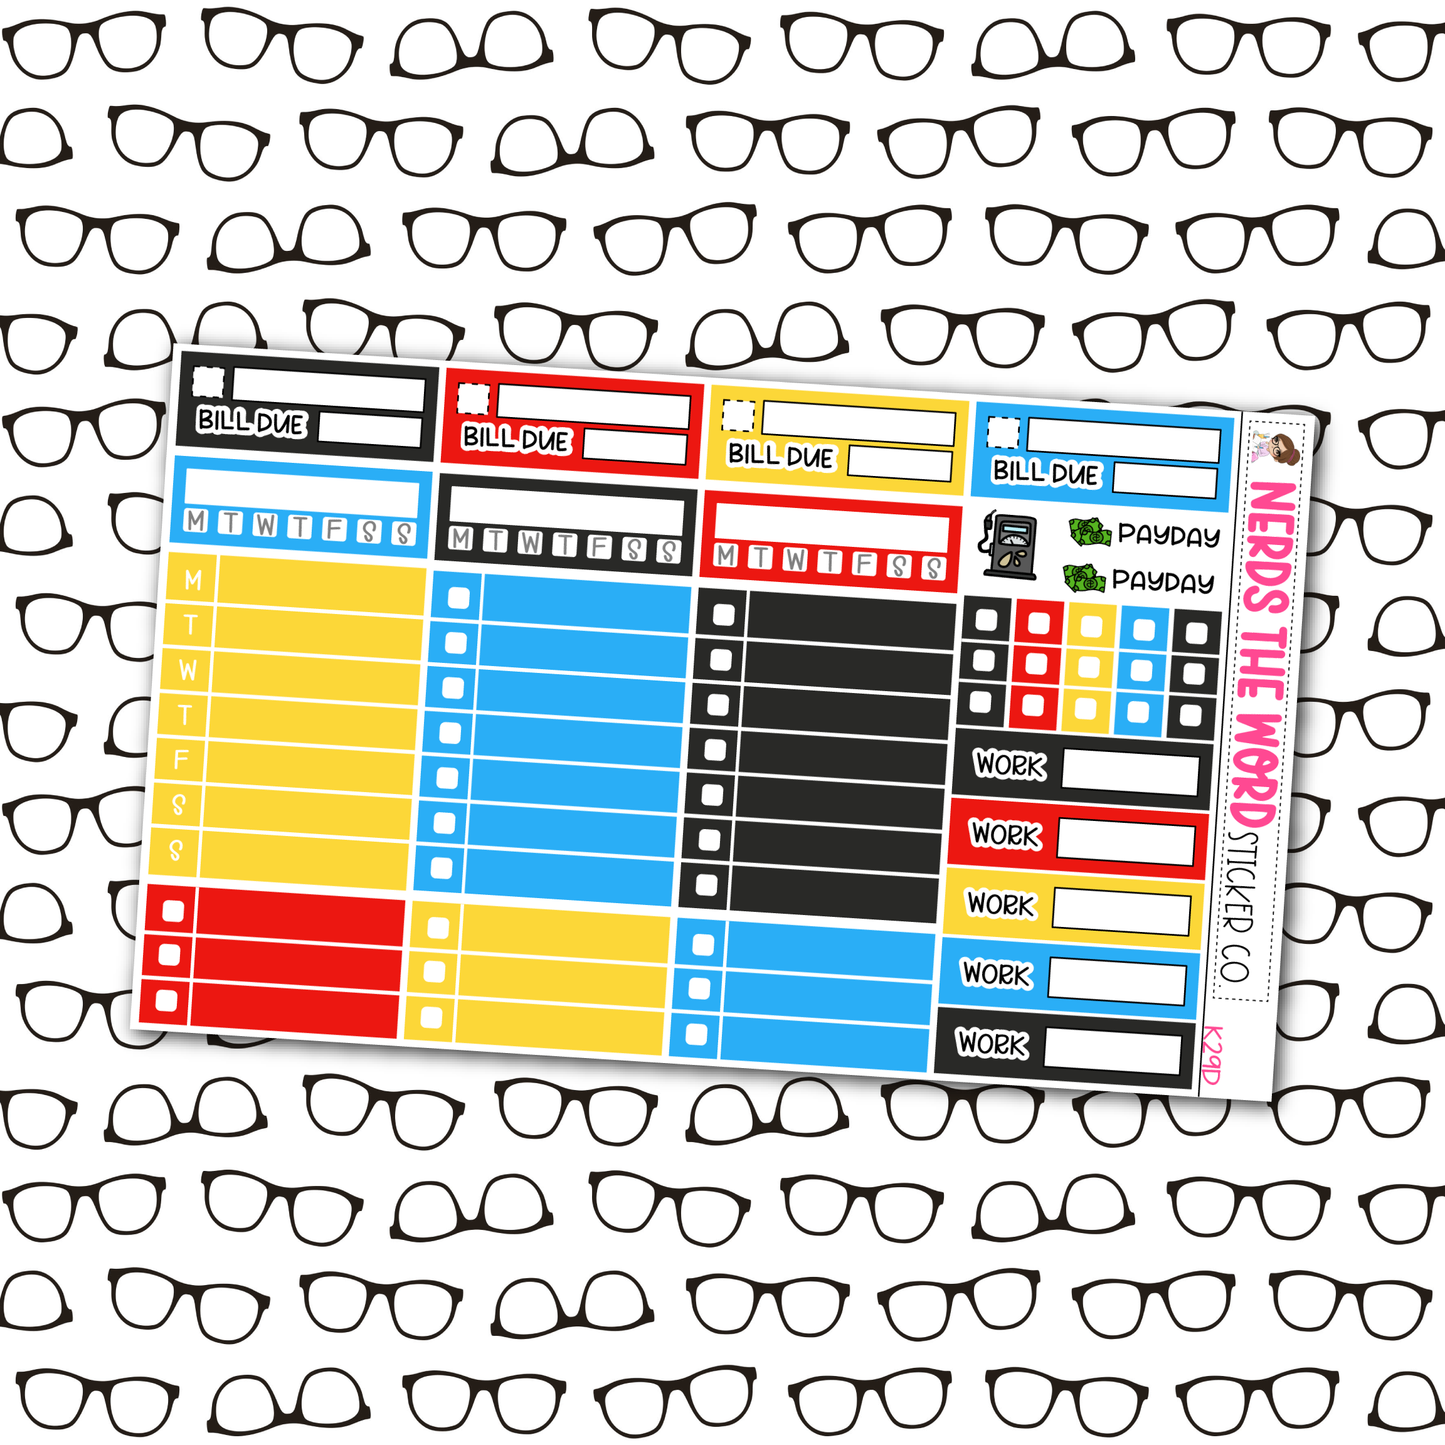 Emoji Weekly Planner Kit